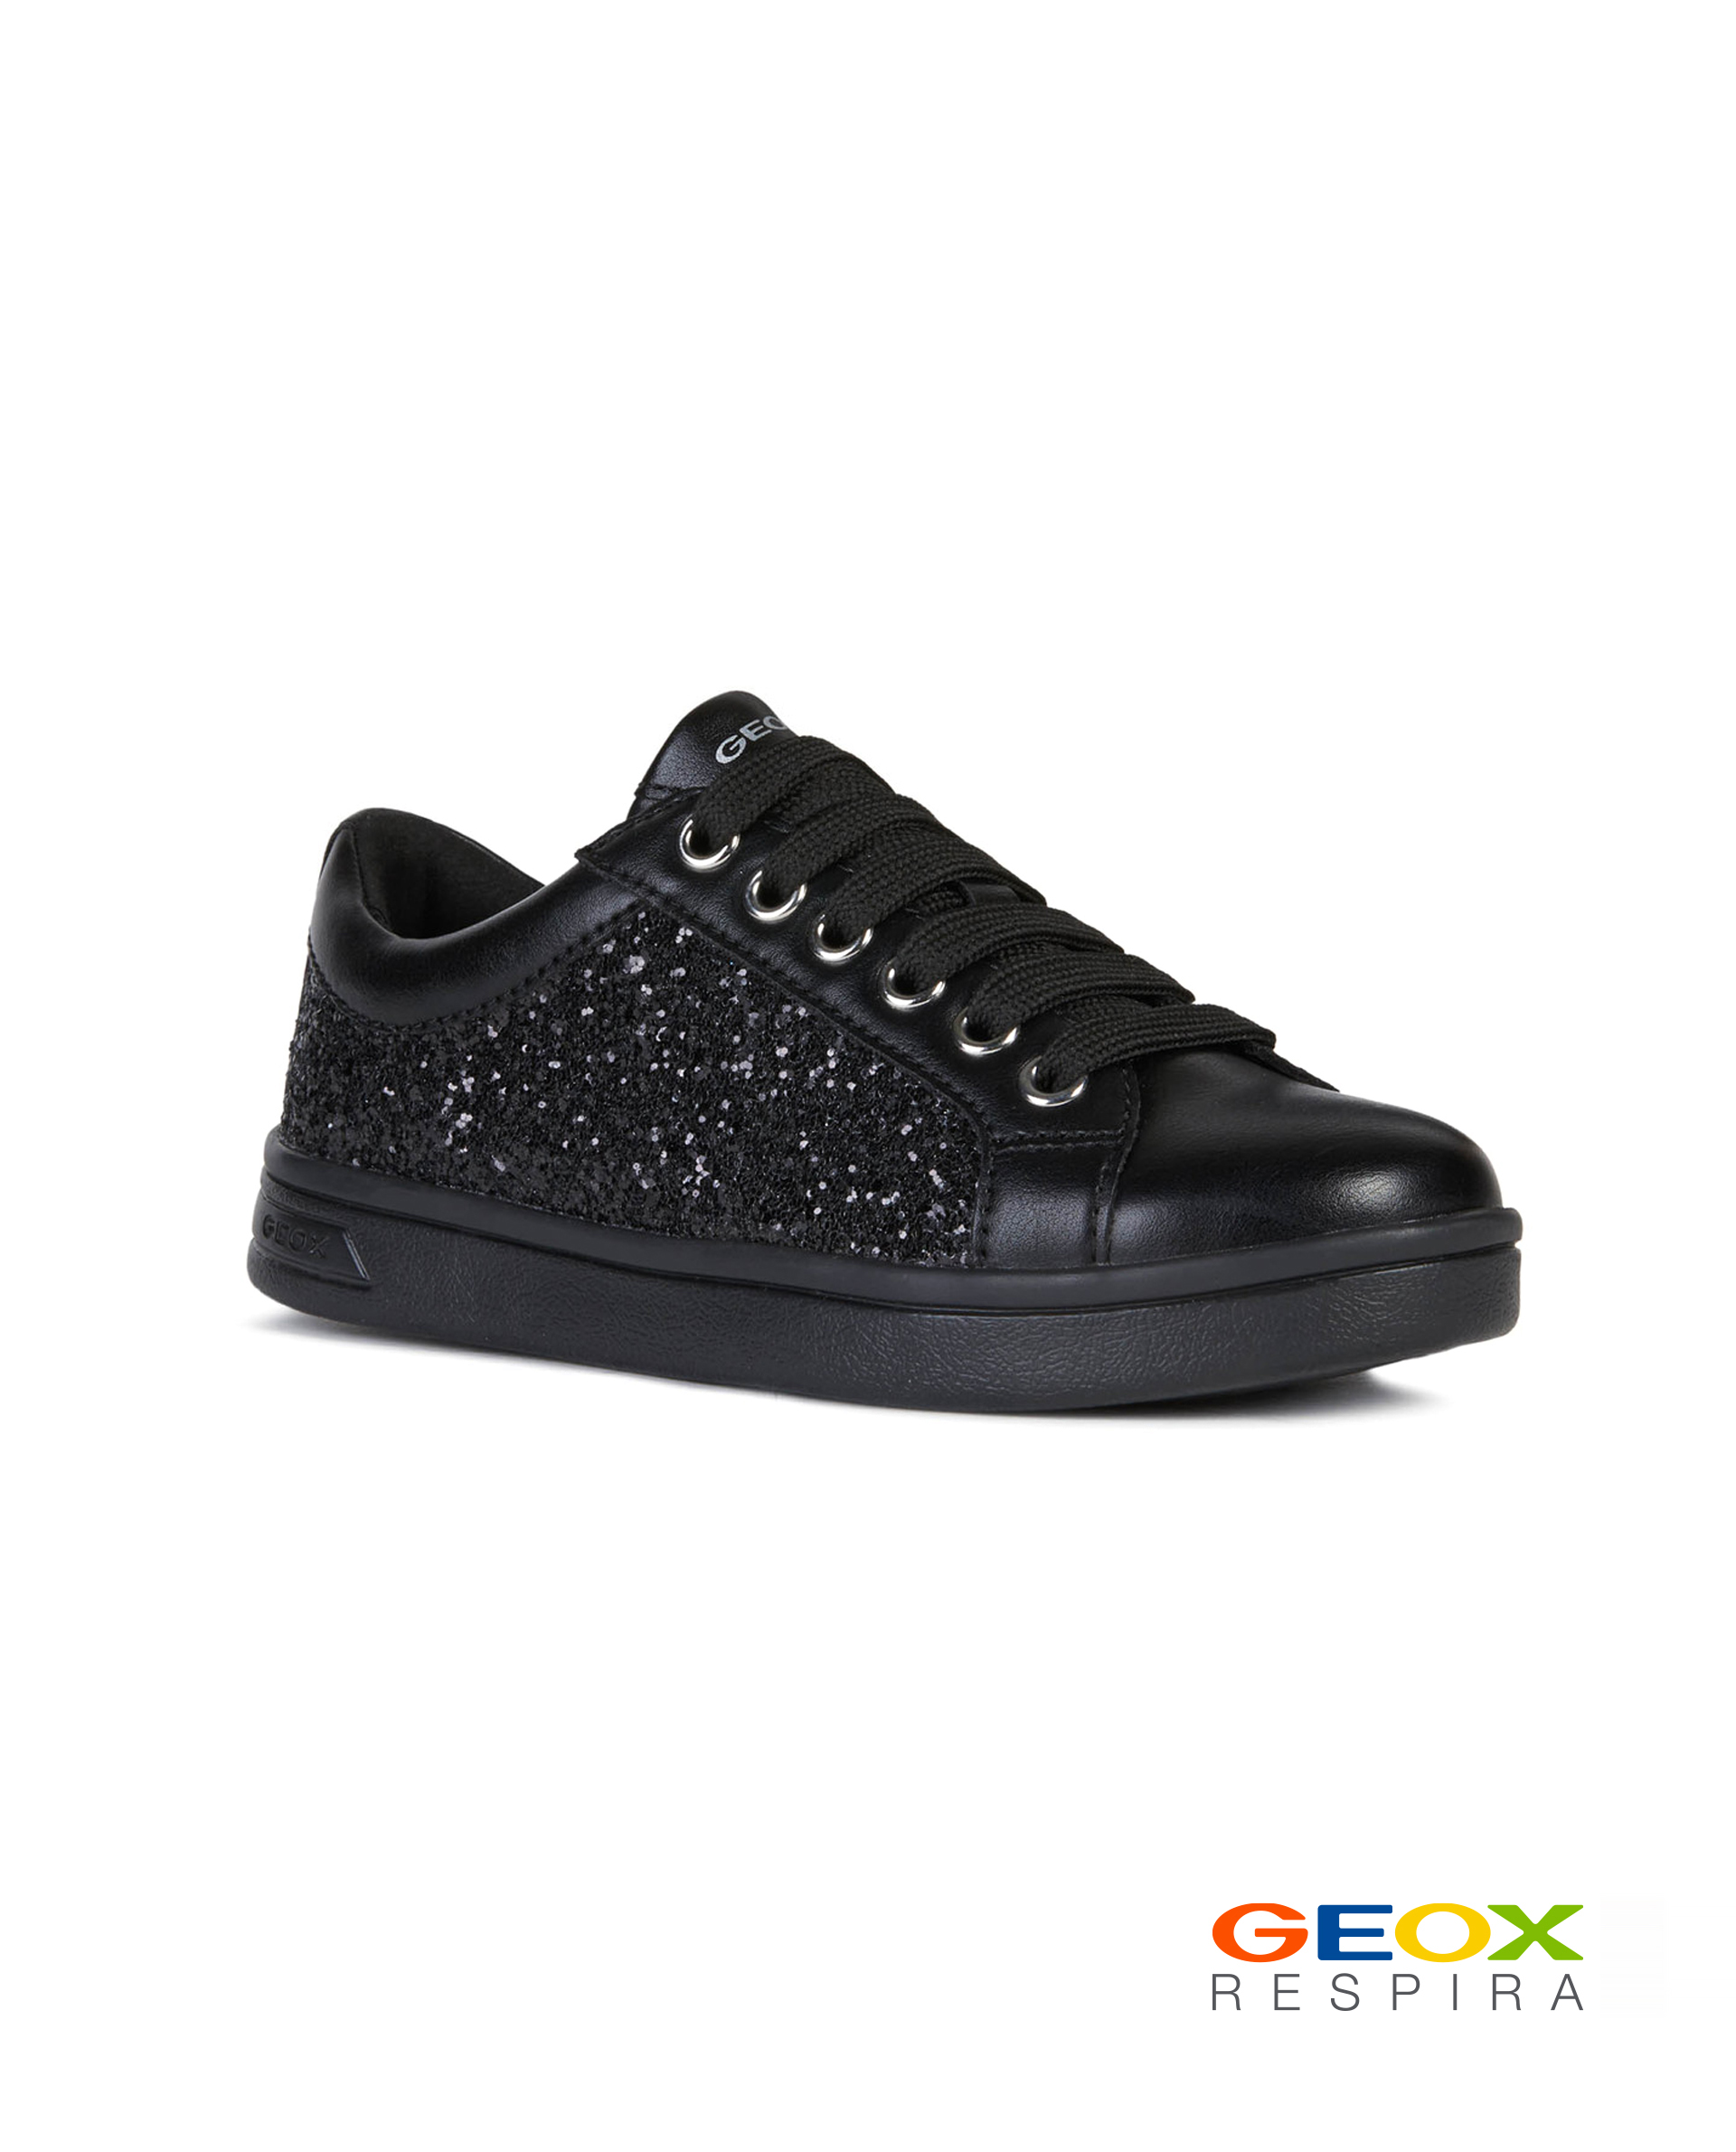 Черные кроссовки Geox J044MELEWBCC9999, размер 37, цвет черный